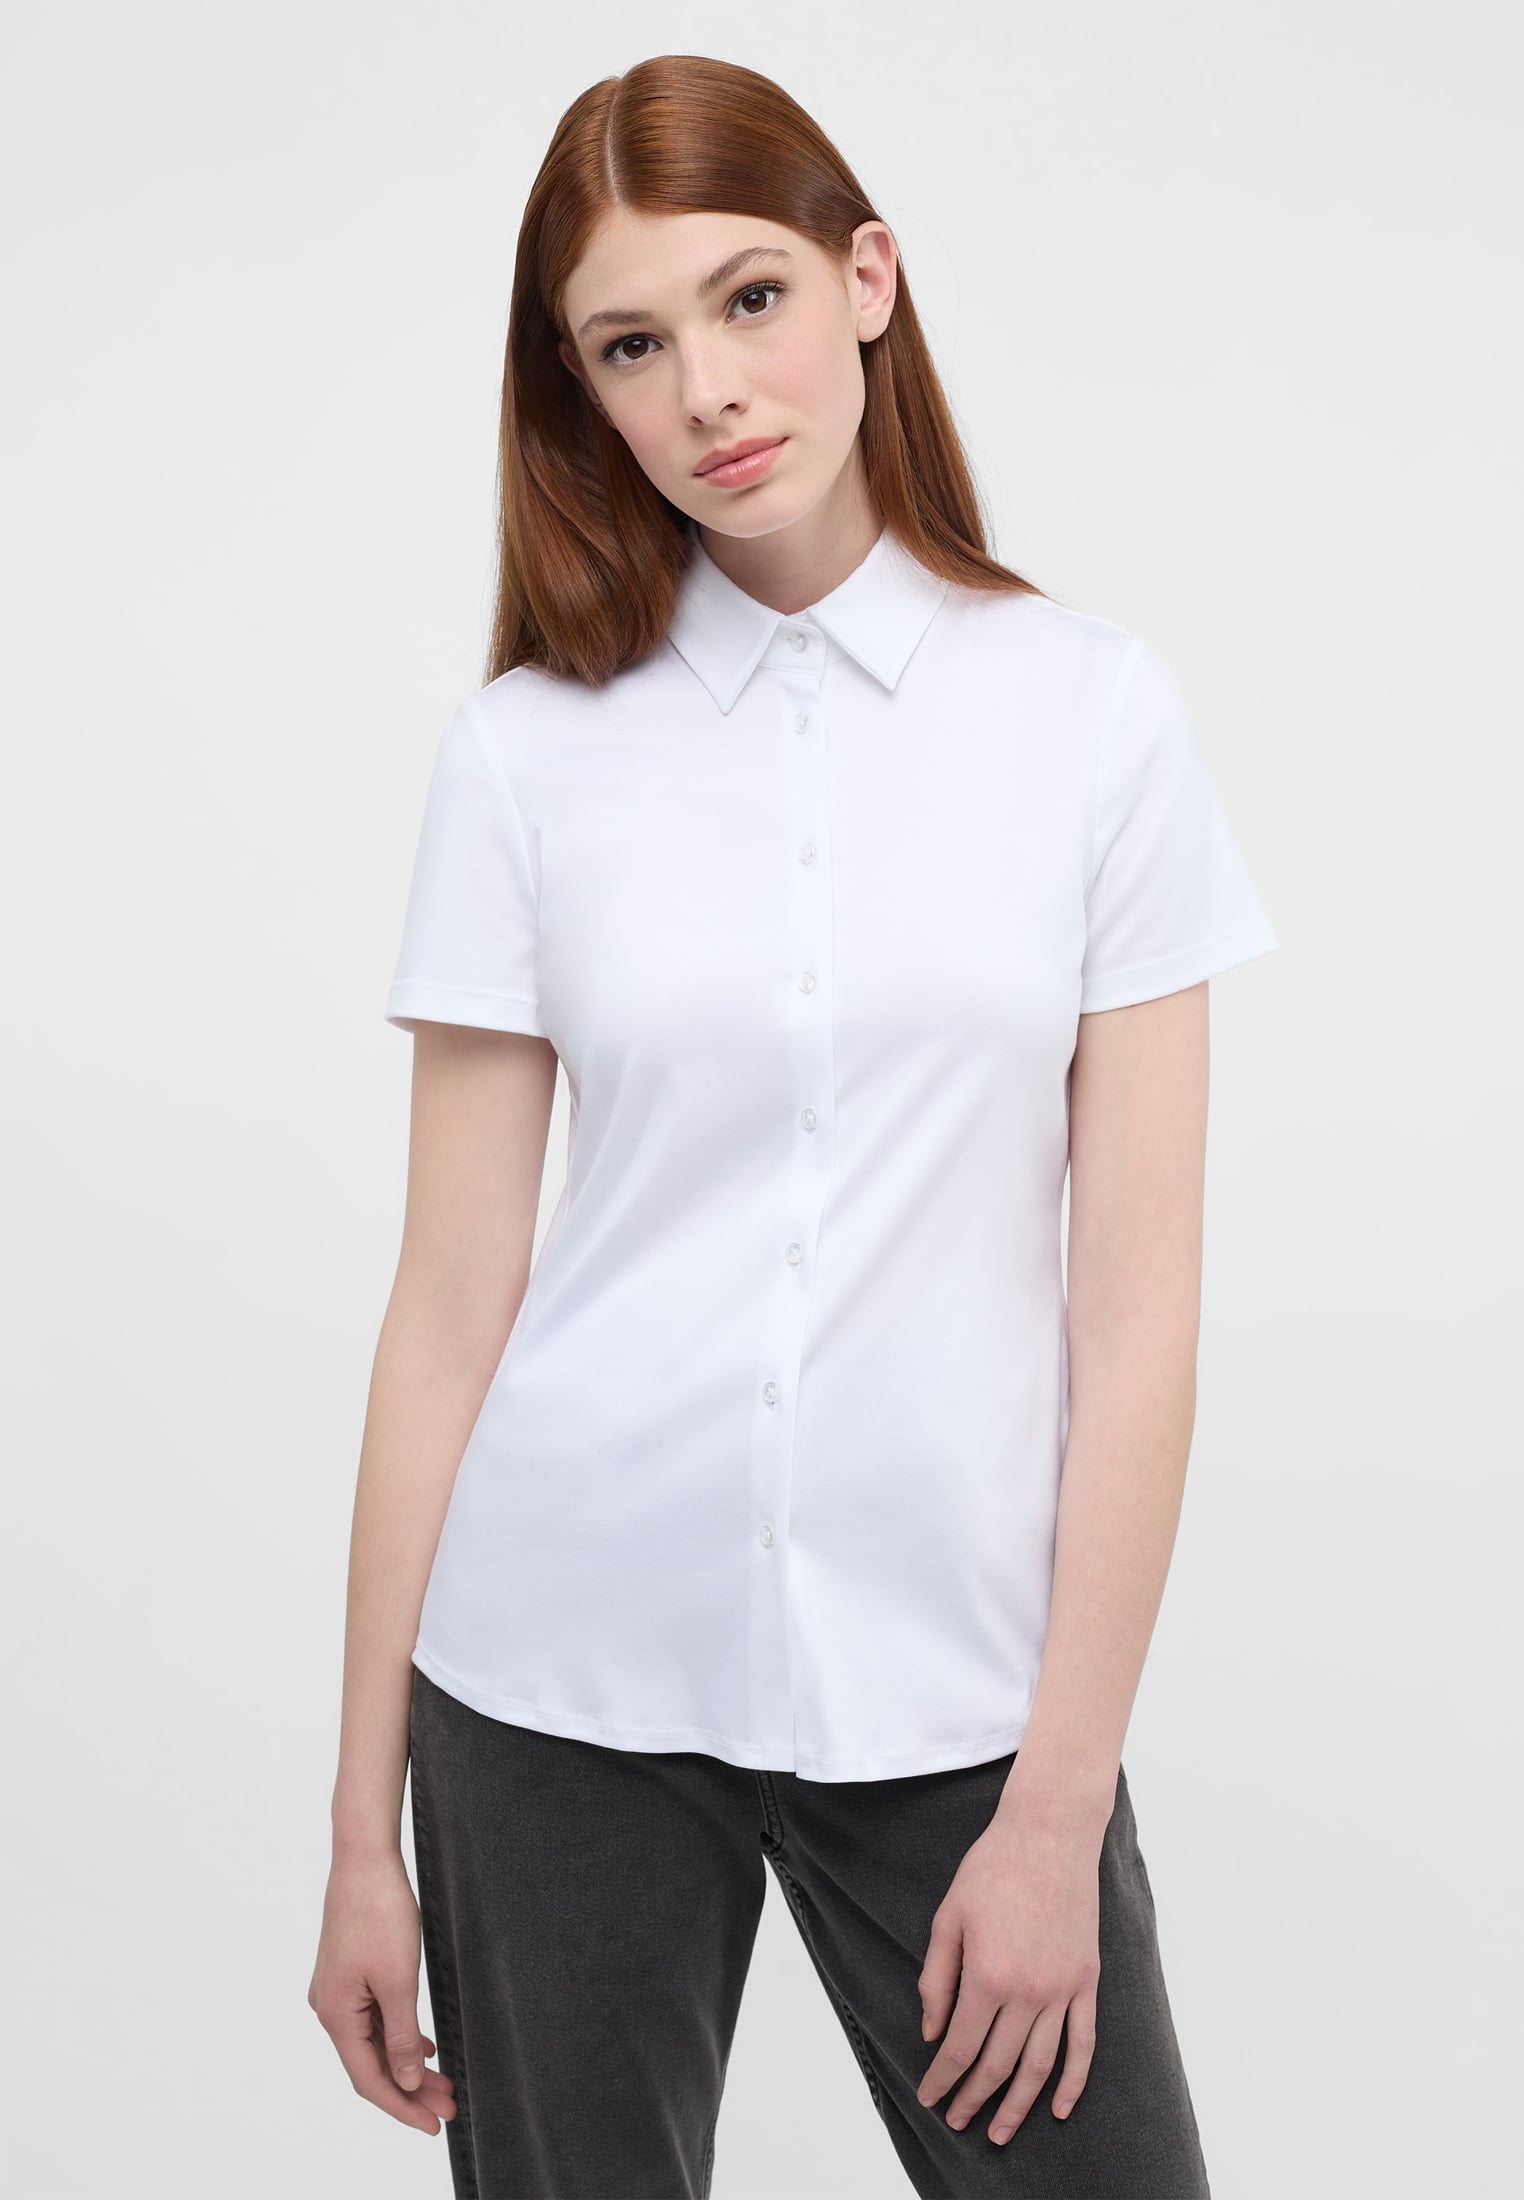 white plain 44 sleeve | short | Shirt Jersey white | | in Blouse 2BL04293-00-01-44-1/2